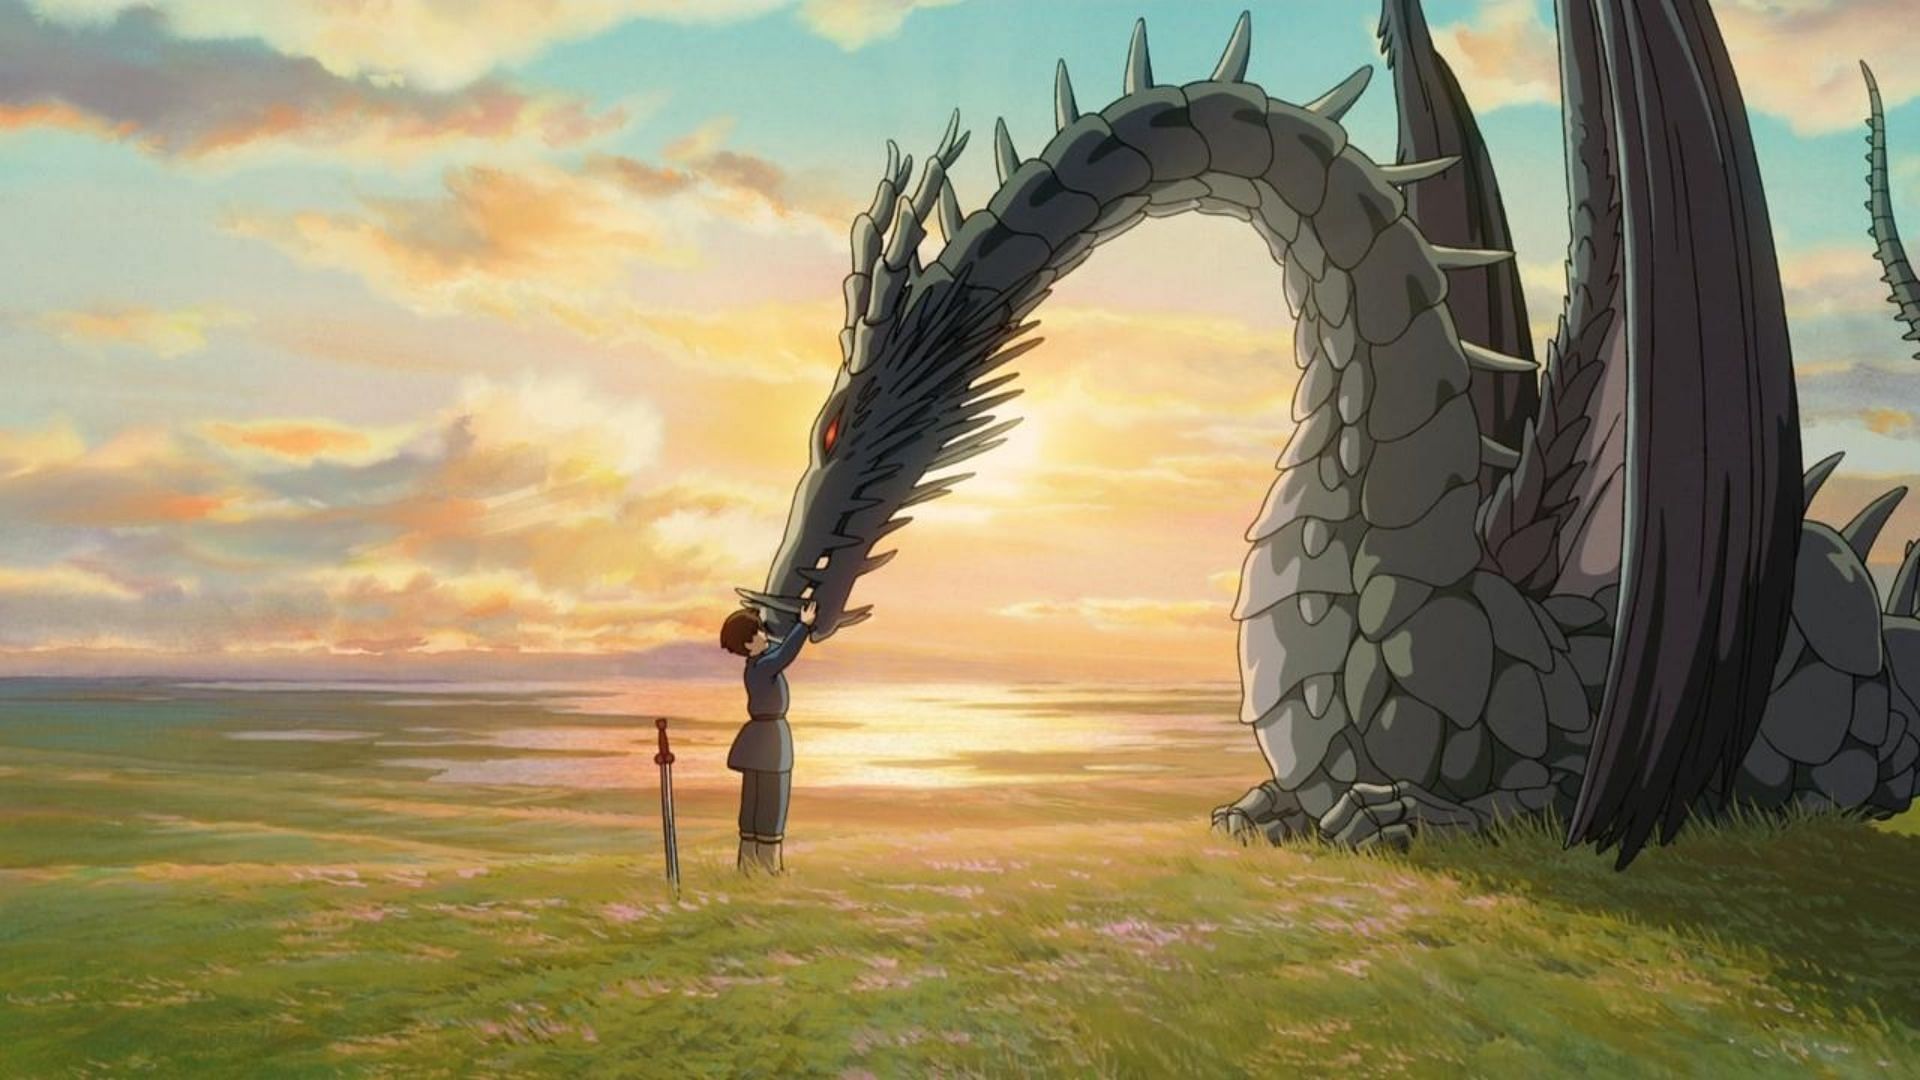 Tales from Earthsea (Image via Studio Ghibli)